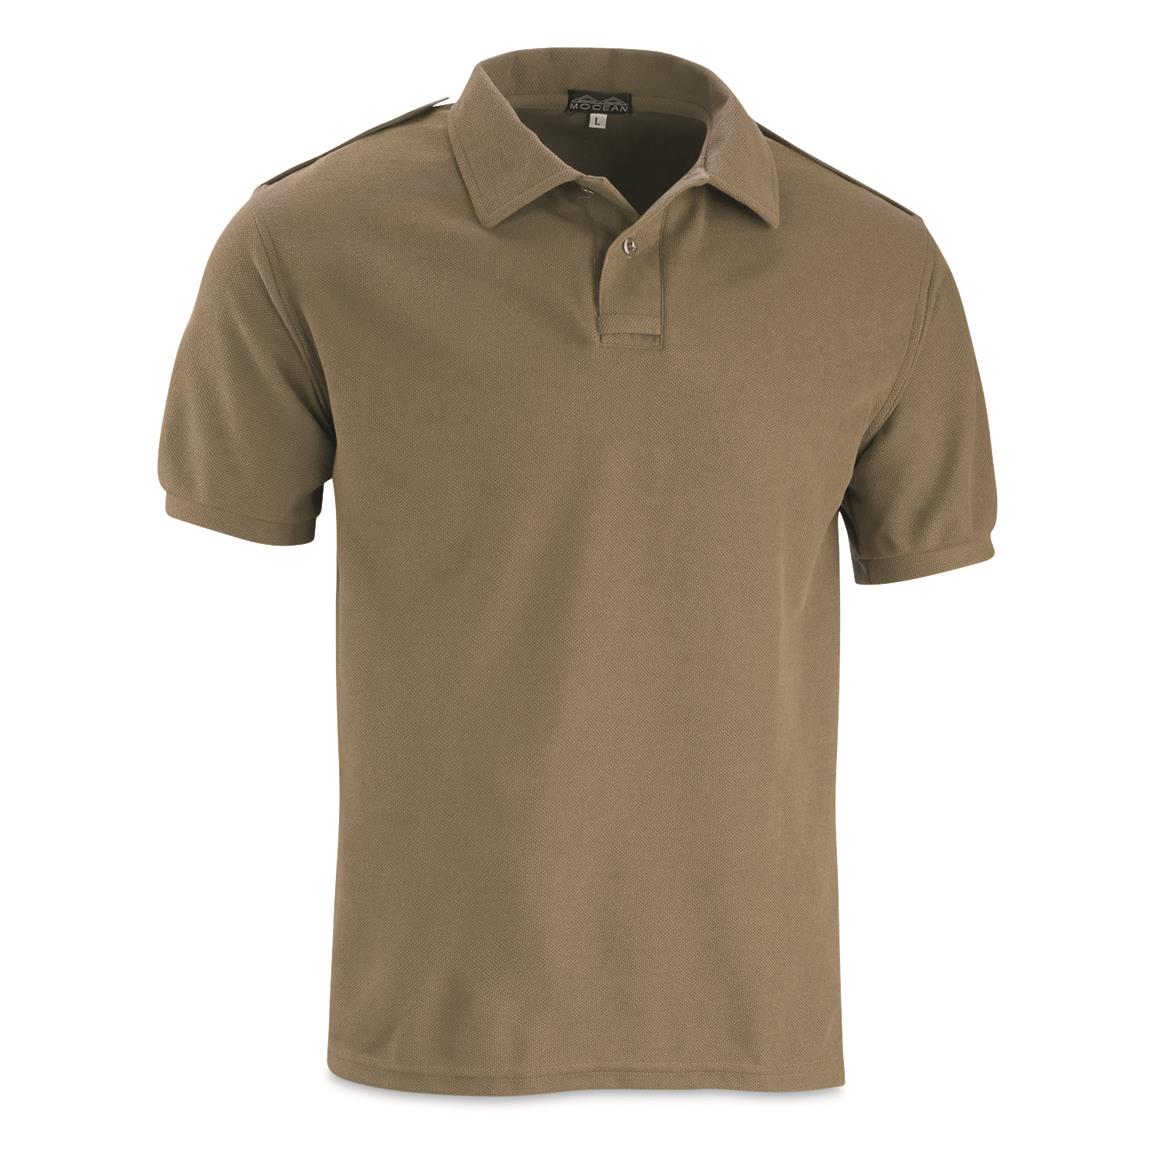 U.S. Police Surplus Short-sleeve Mocean Vapor Pique Polo Shirt, New, Khaki